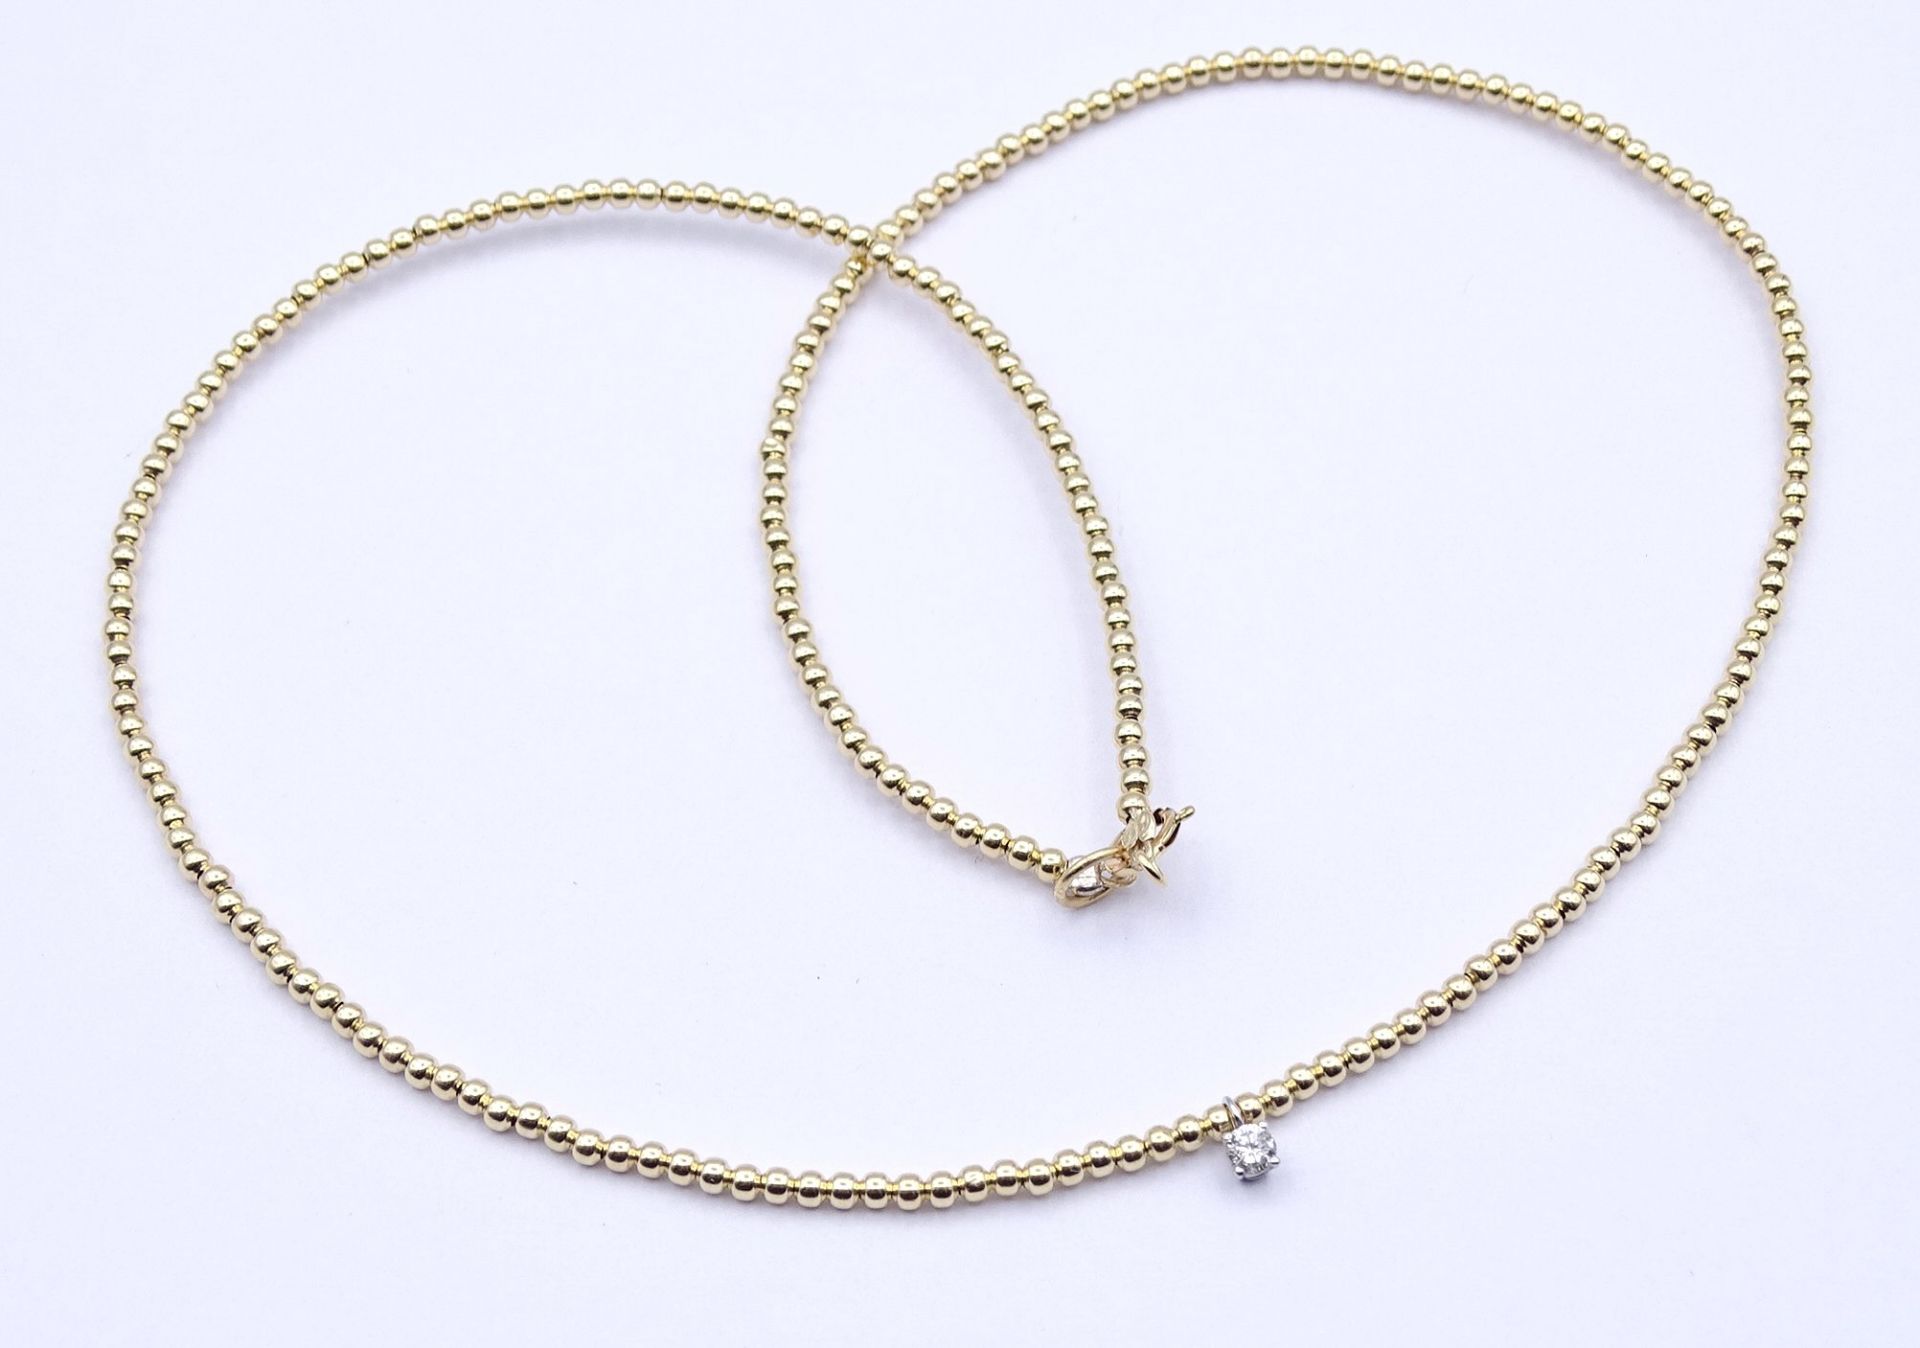 Halskette, GG 585/000 mit Diamant 0,07ct., L. 40,5cm, 1,45g.